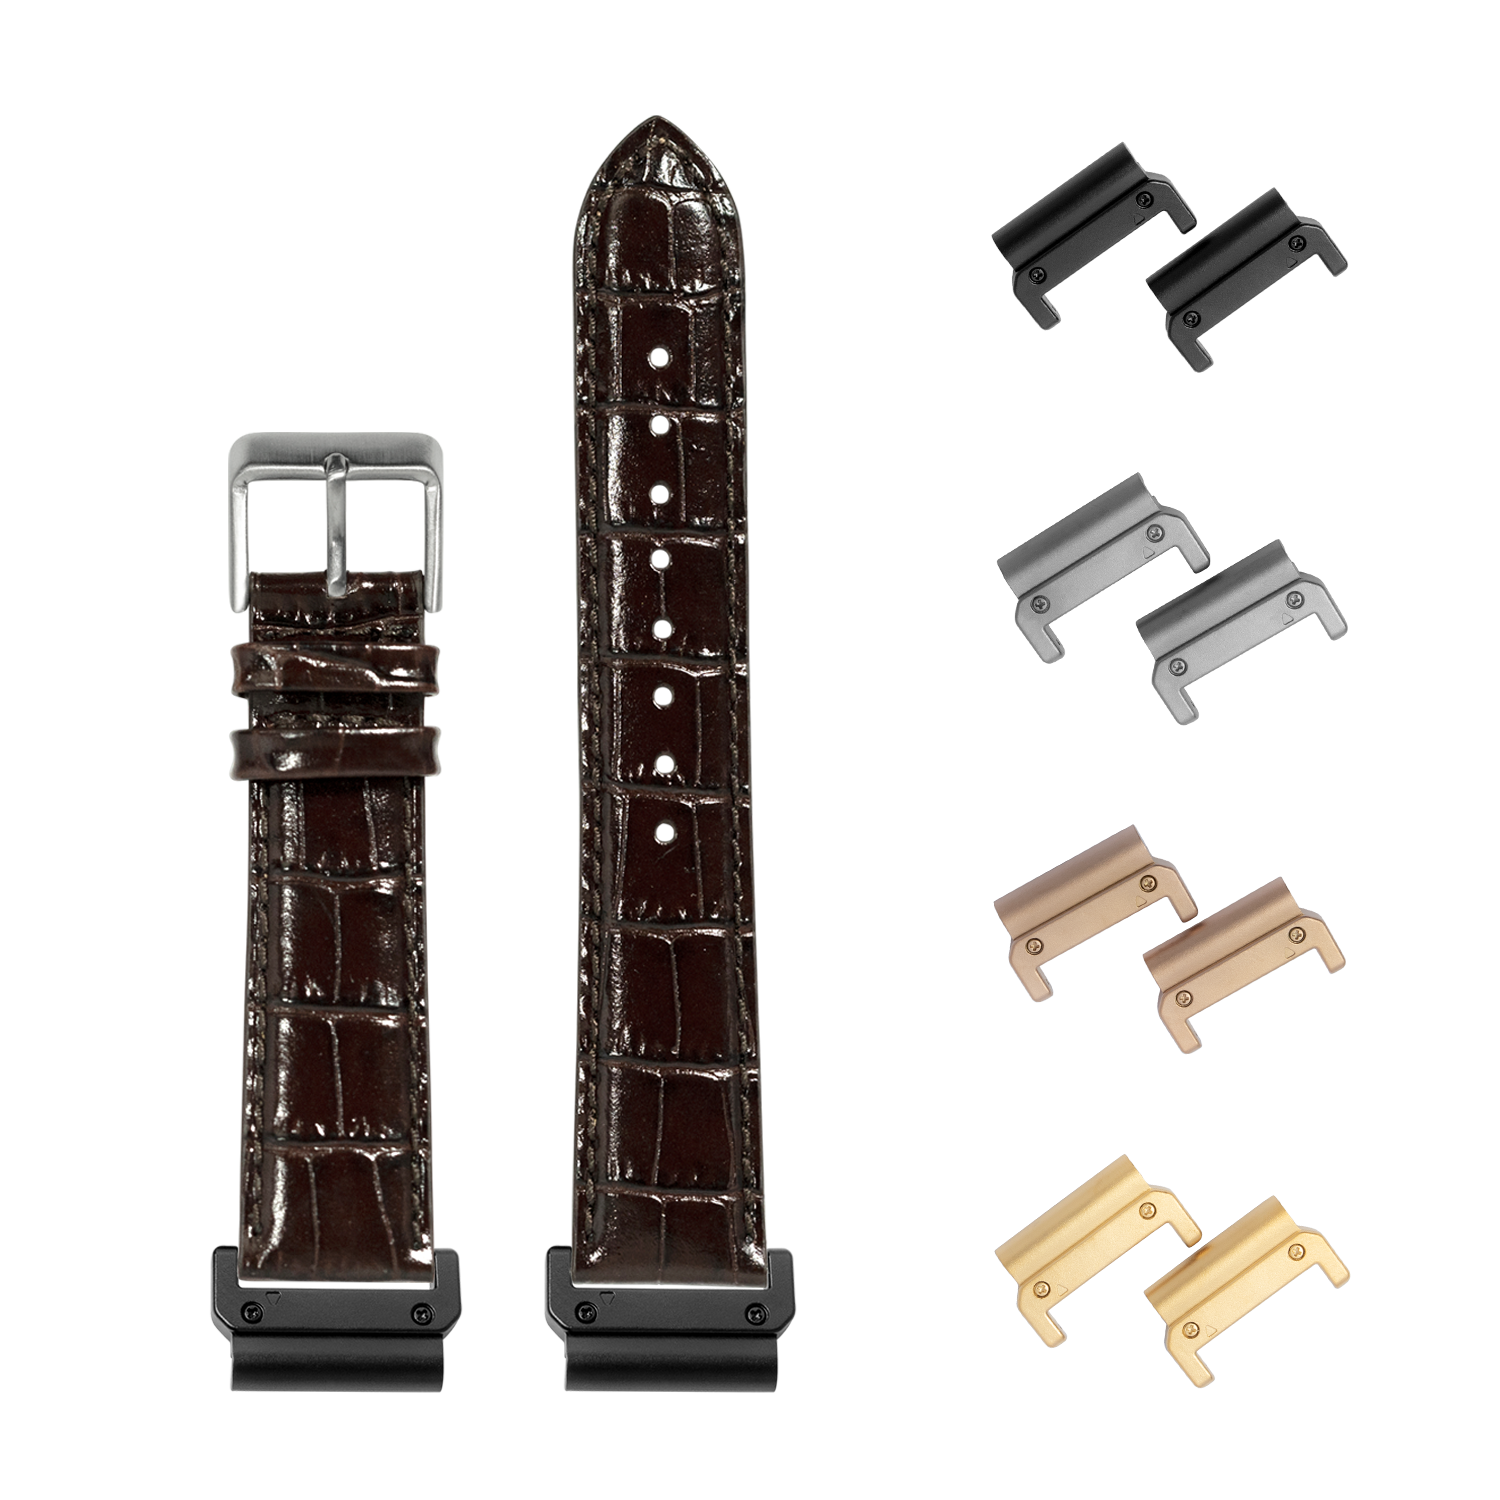 [QuickFit] Alligator Leather - Dark Brown 22mm